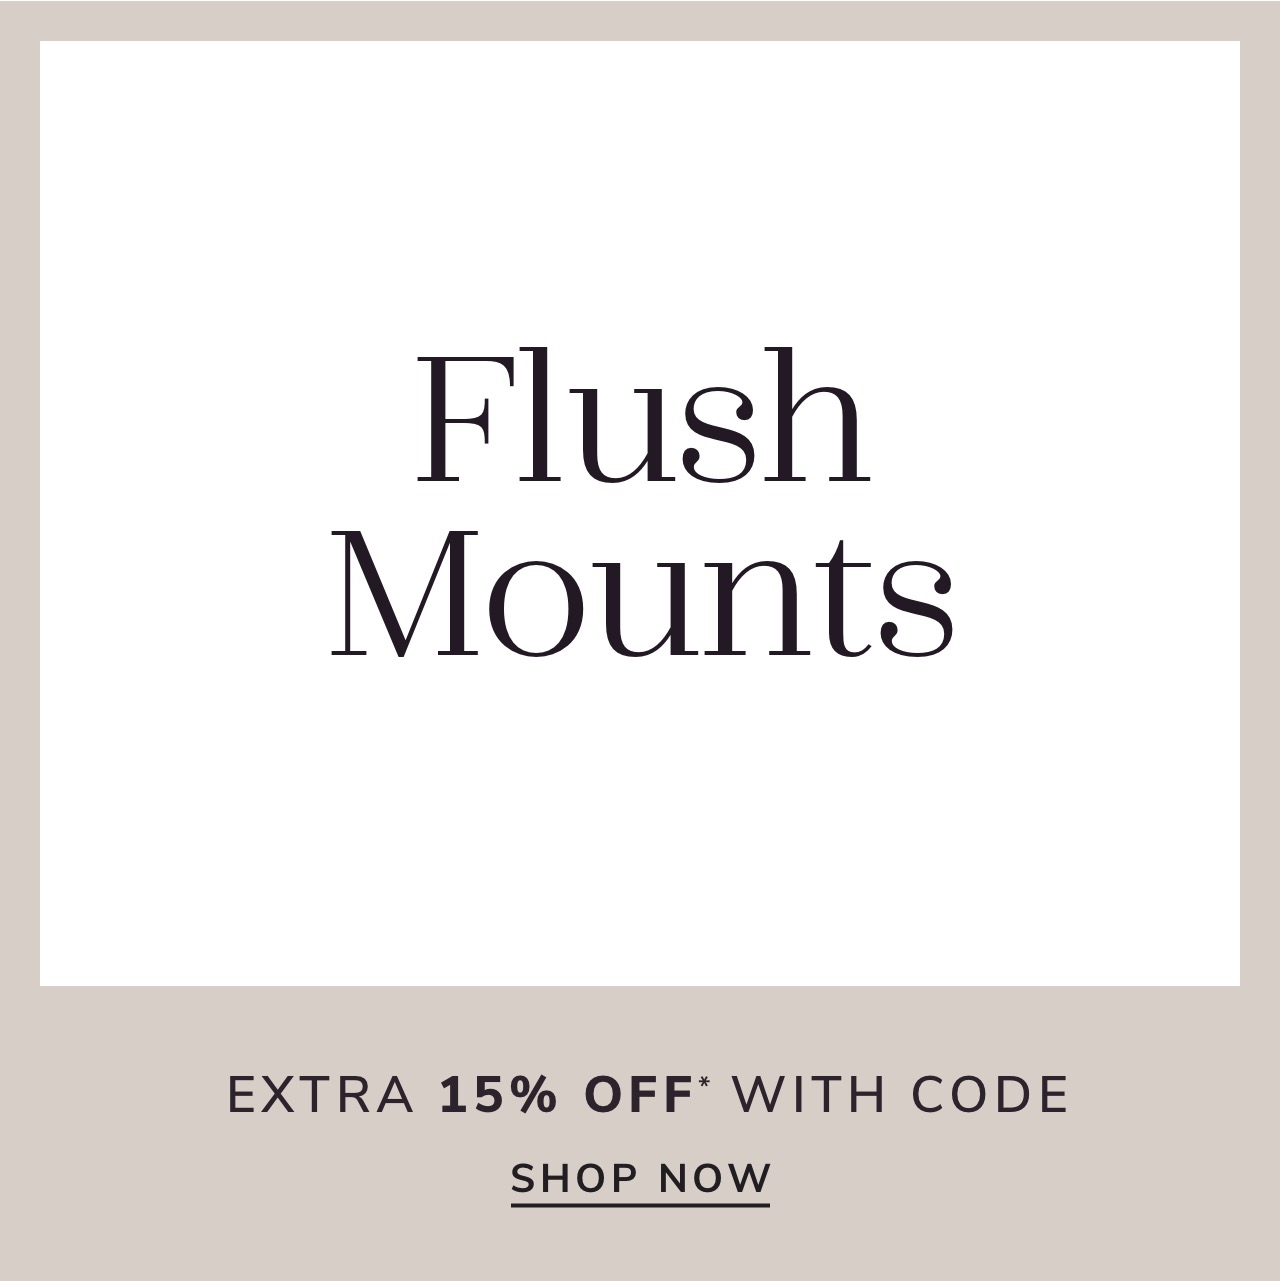 Flush Mount Sale